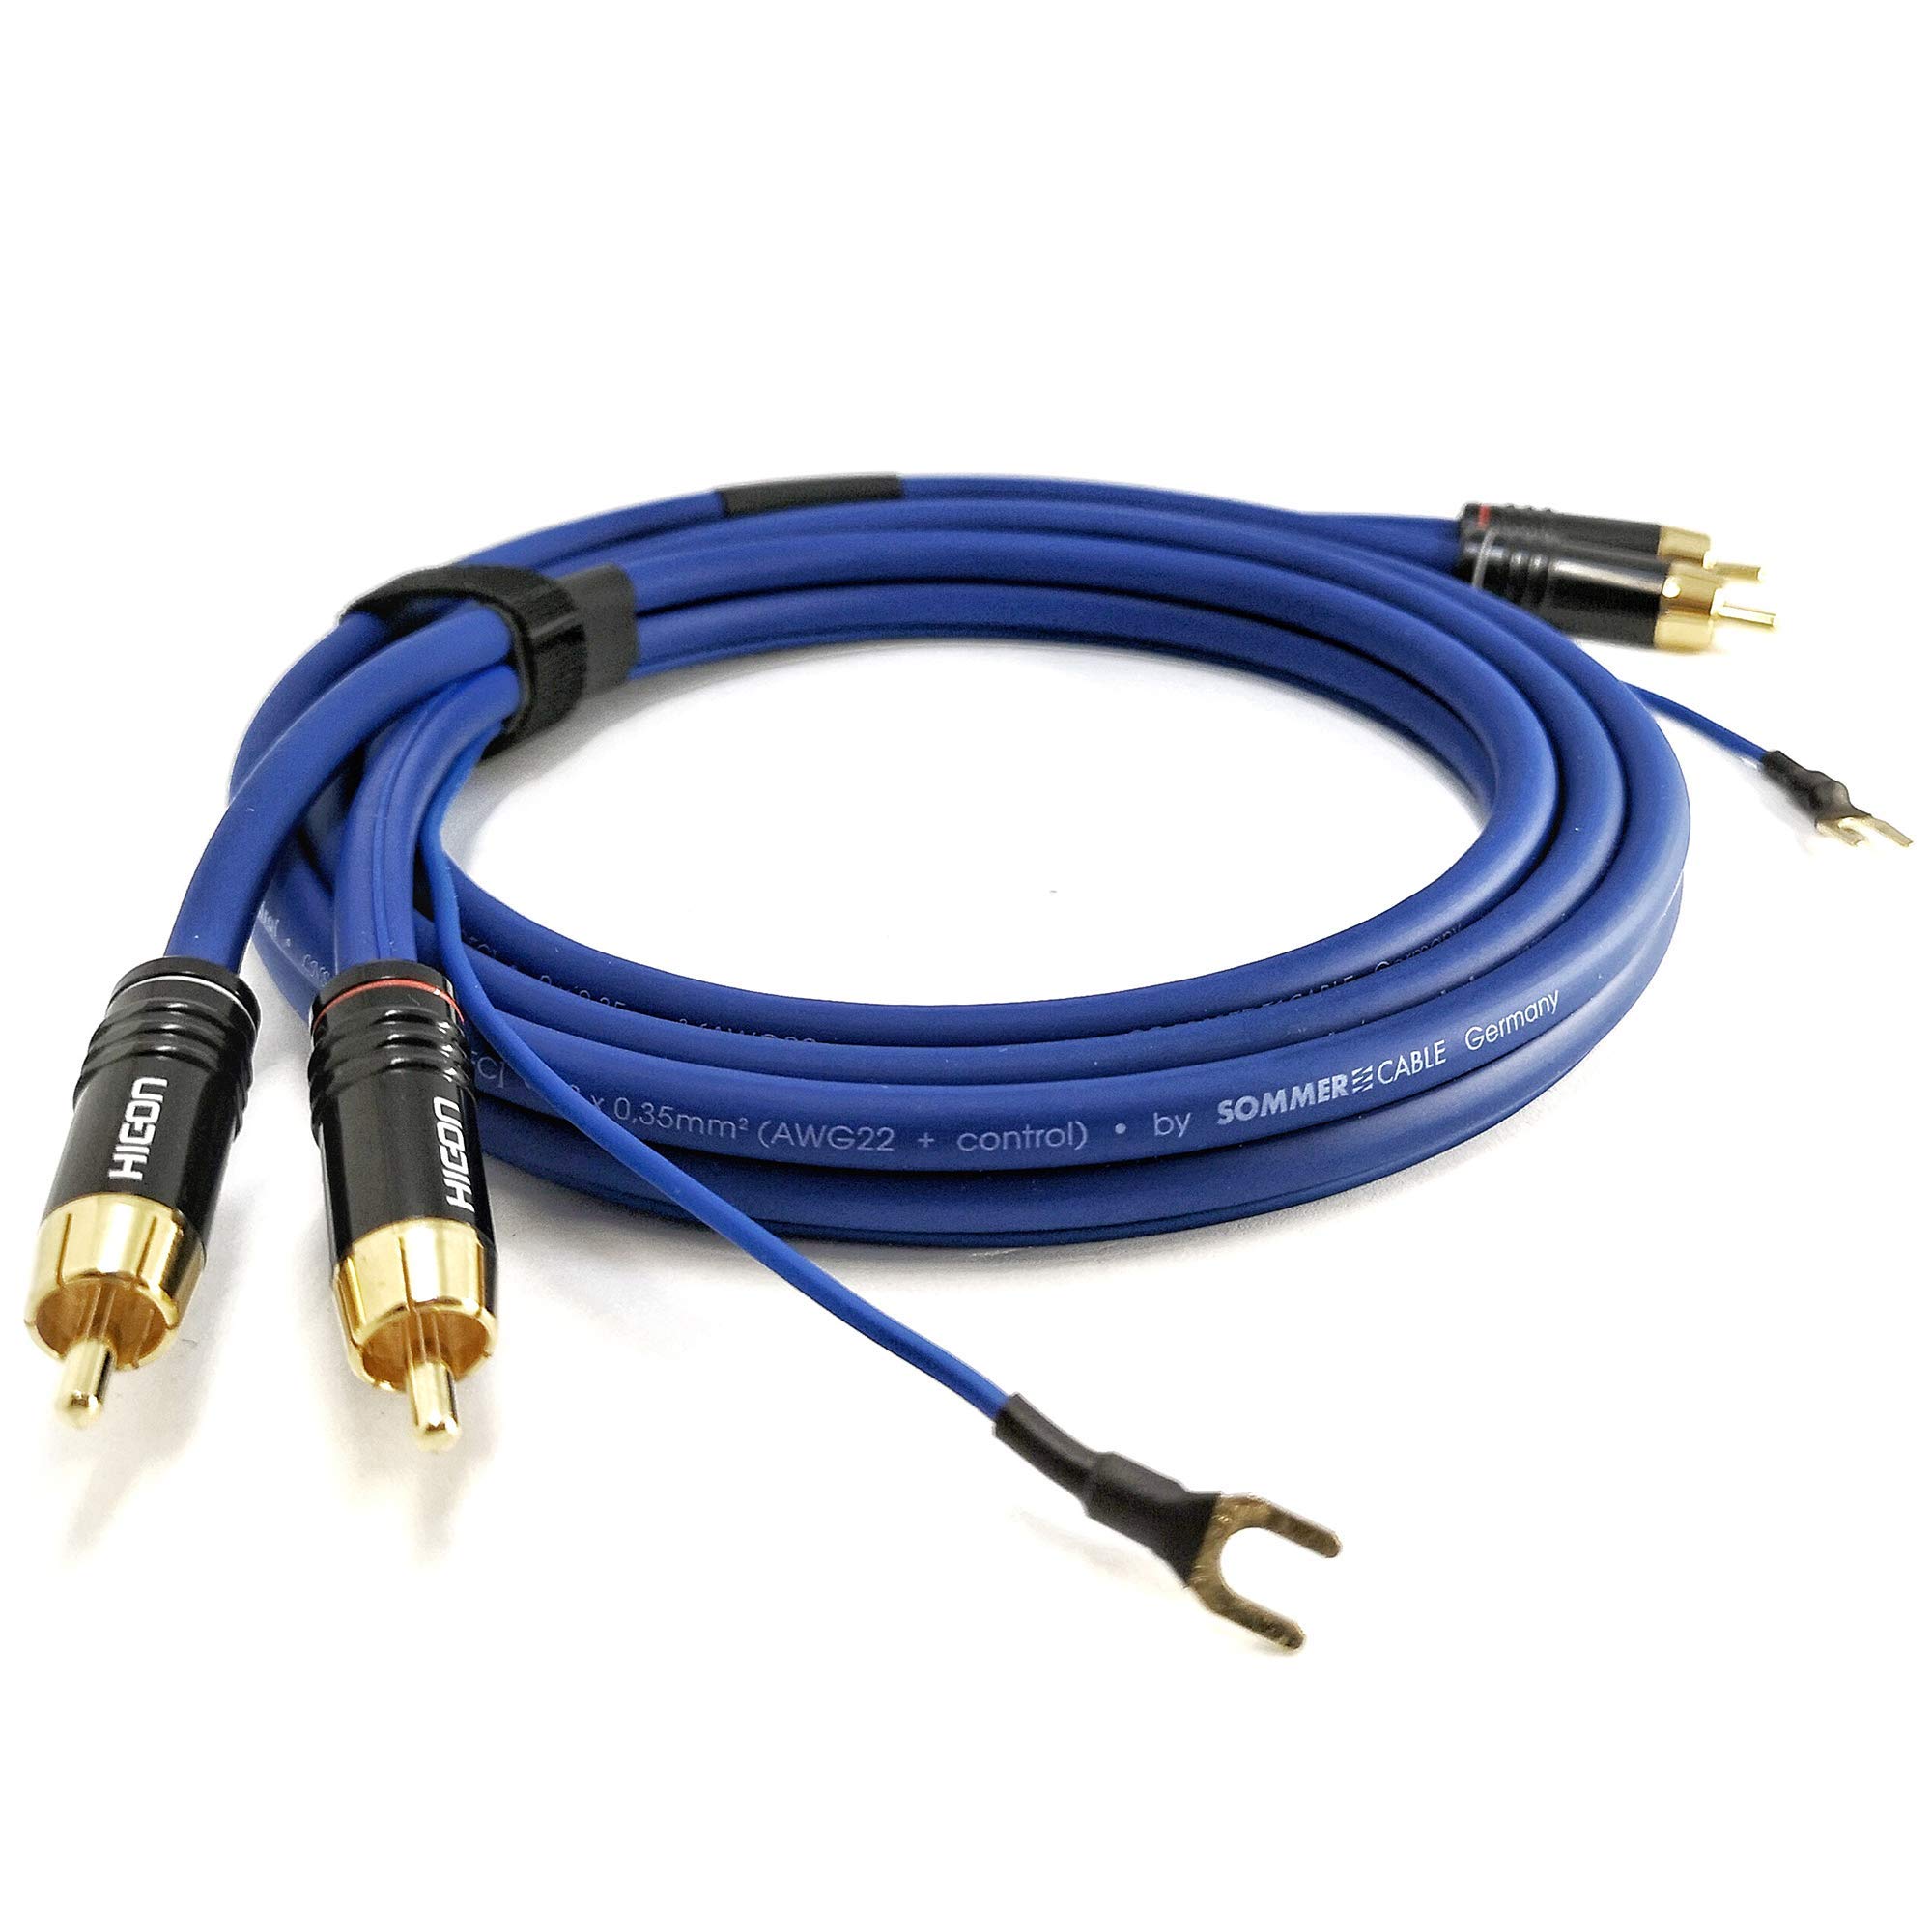 NF- Phonokabel 2,5m geschirmte Audiosignalleitung Sommer Cable 2X 0,35mm² längere Masseleitung (2,6m) 1x 0,35mm² vergoldete HICON CM06 Stecker - SC81-K3-0250